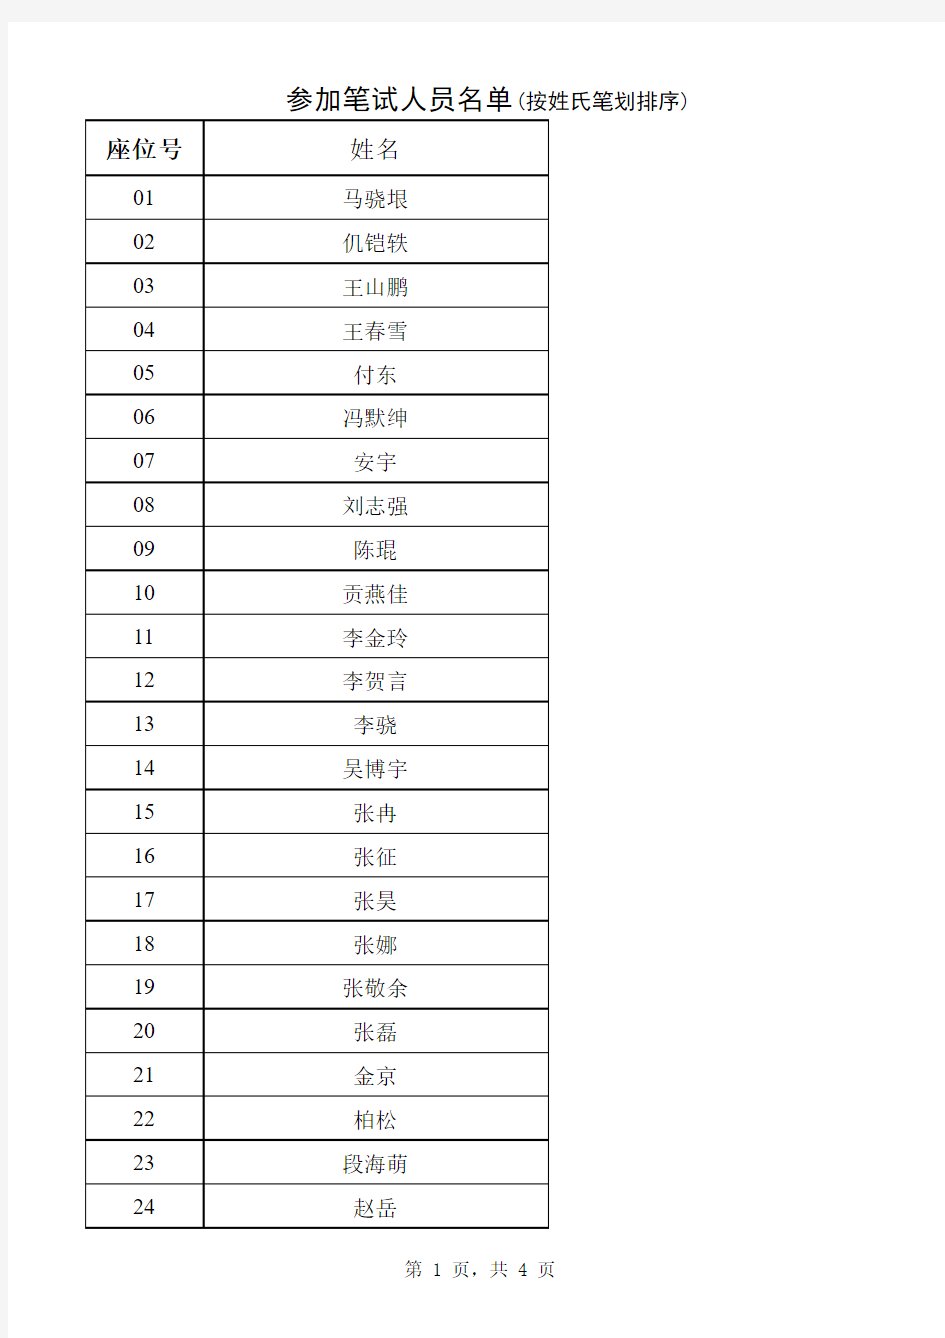 参加笔试人员名单 - 中华人民共和国审计署